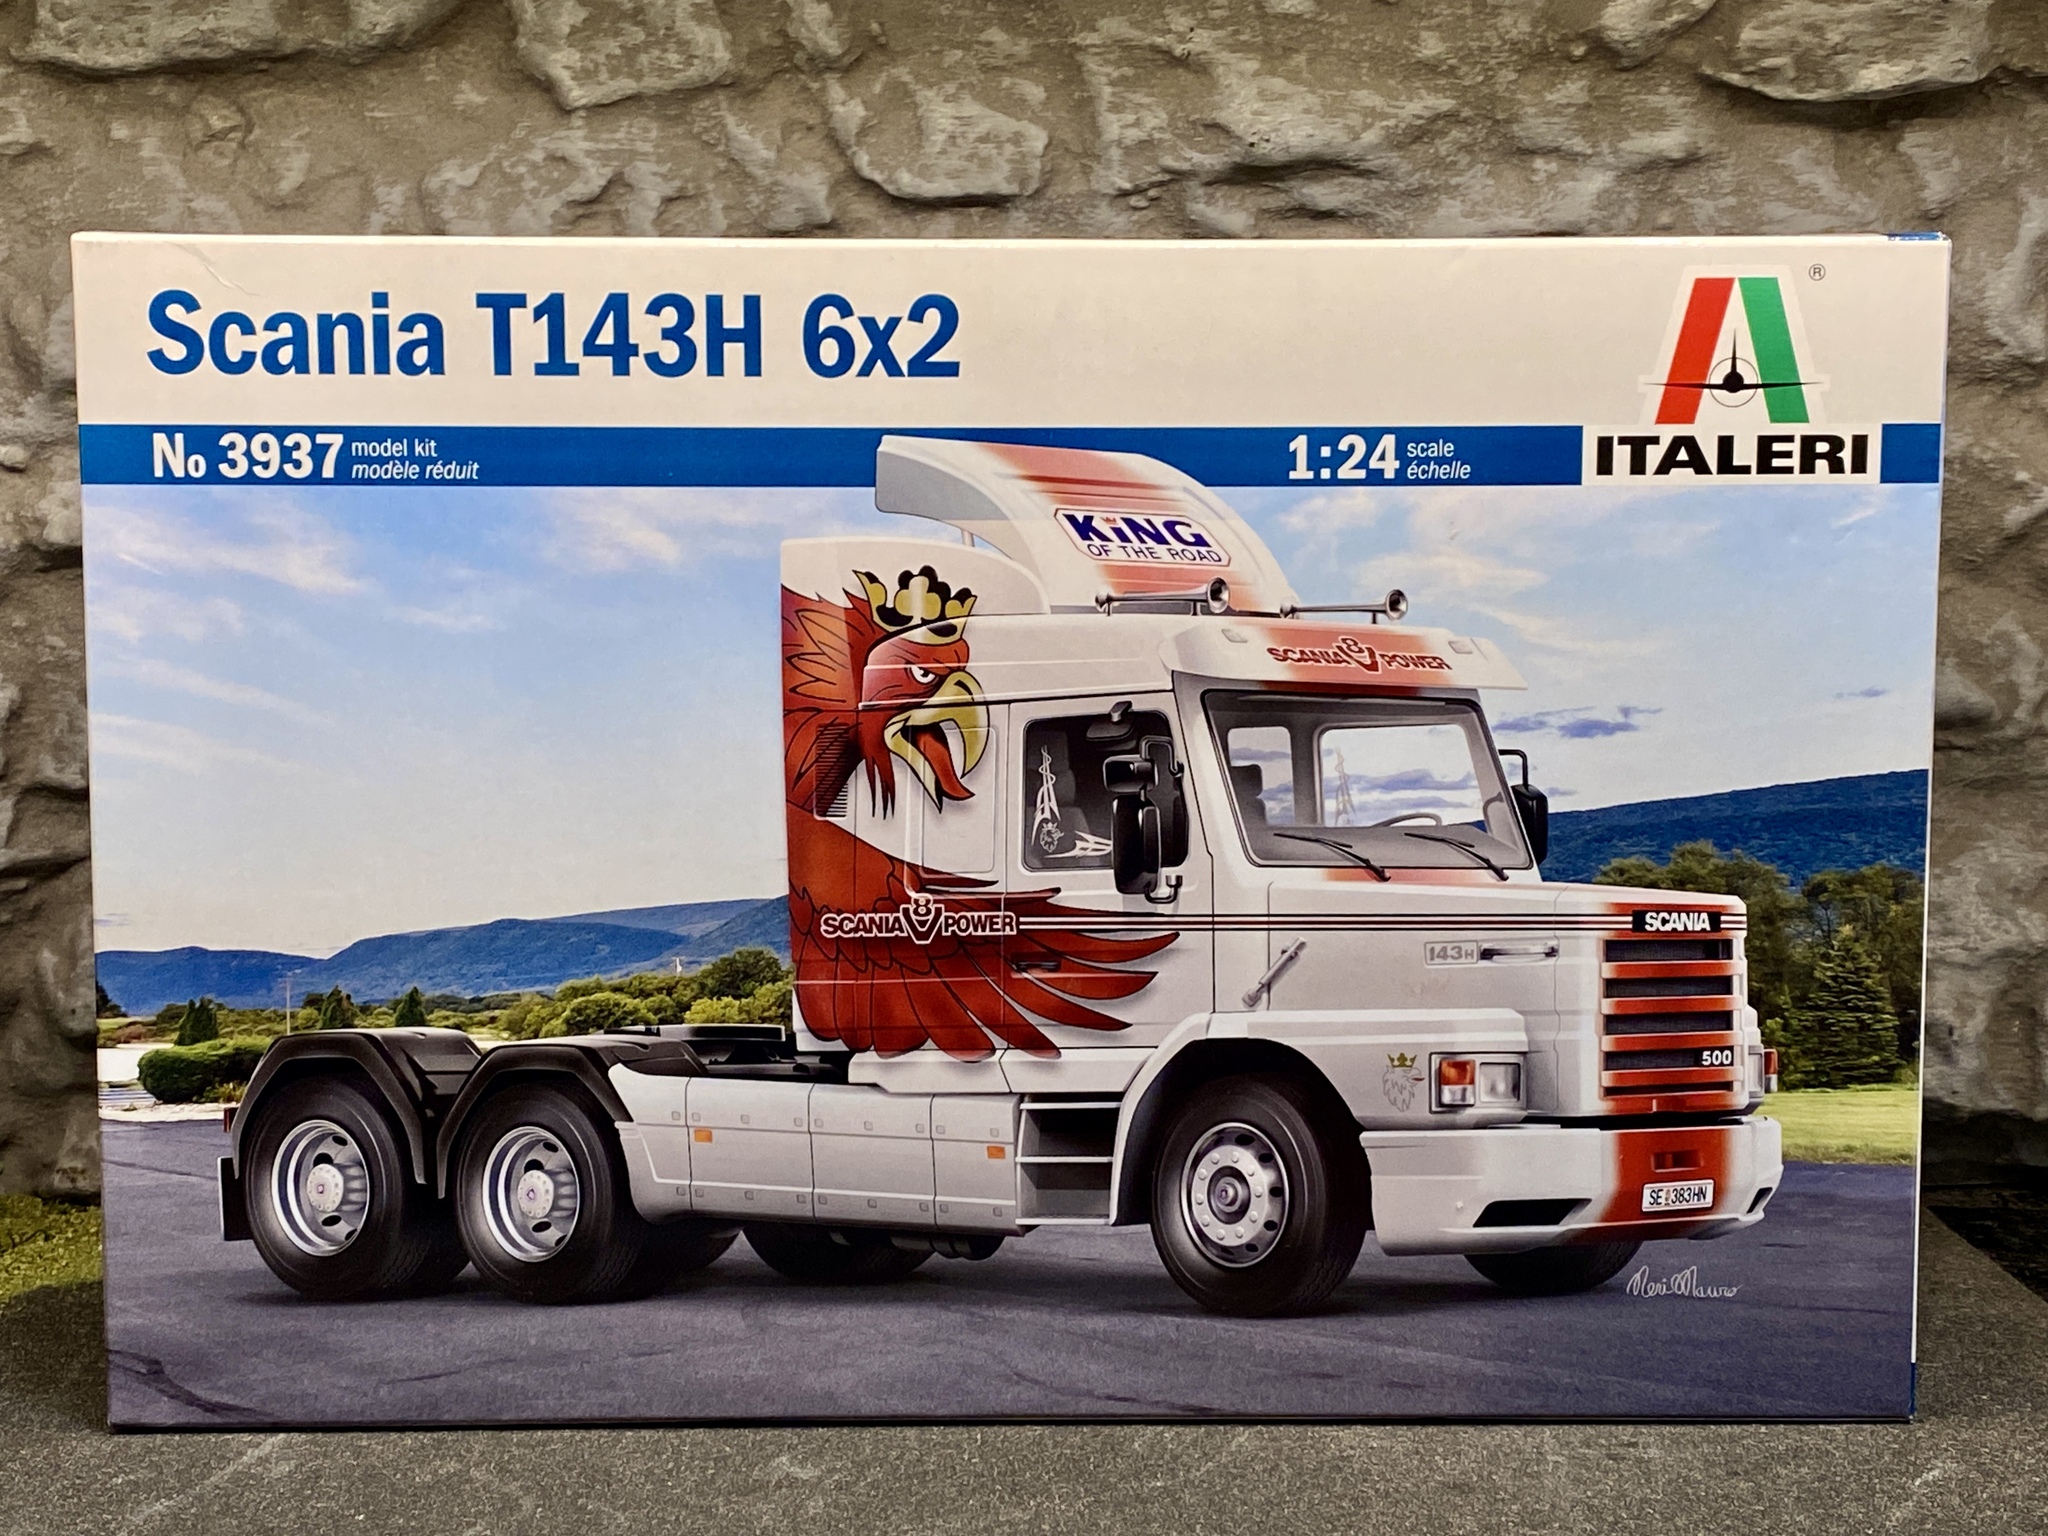 Skala 1/24 Byggmodell: Scania T143H 6x2 från Italeri